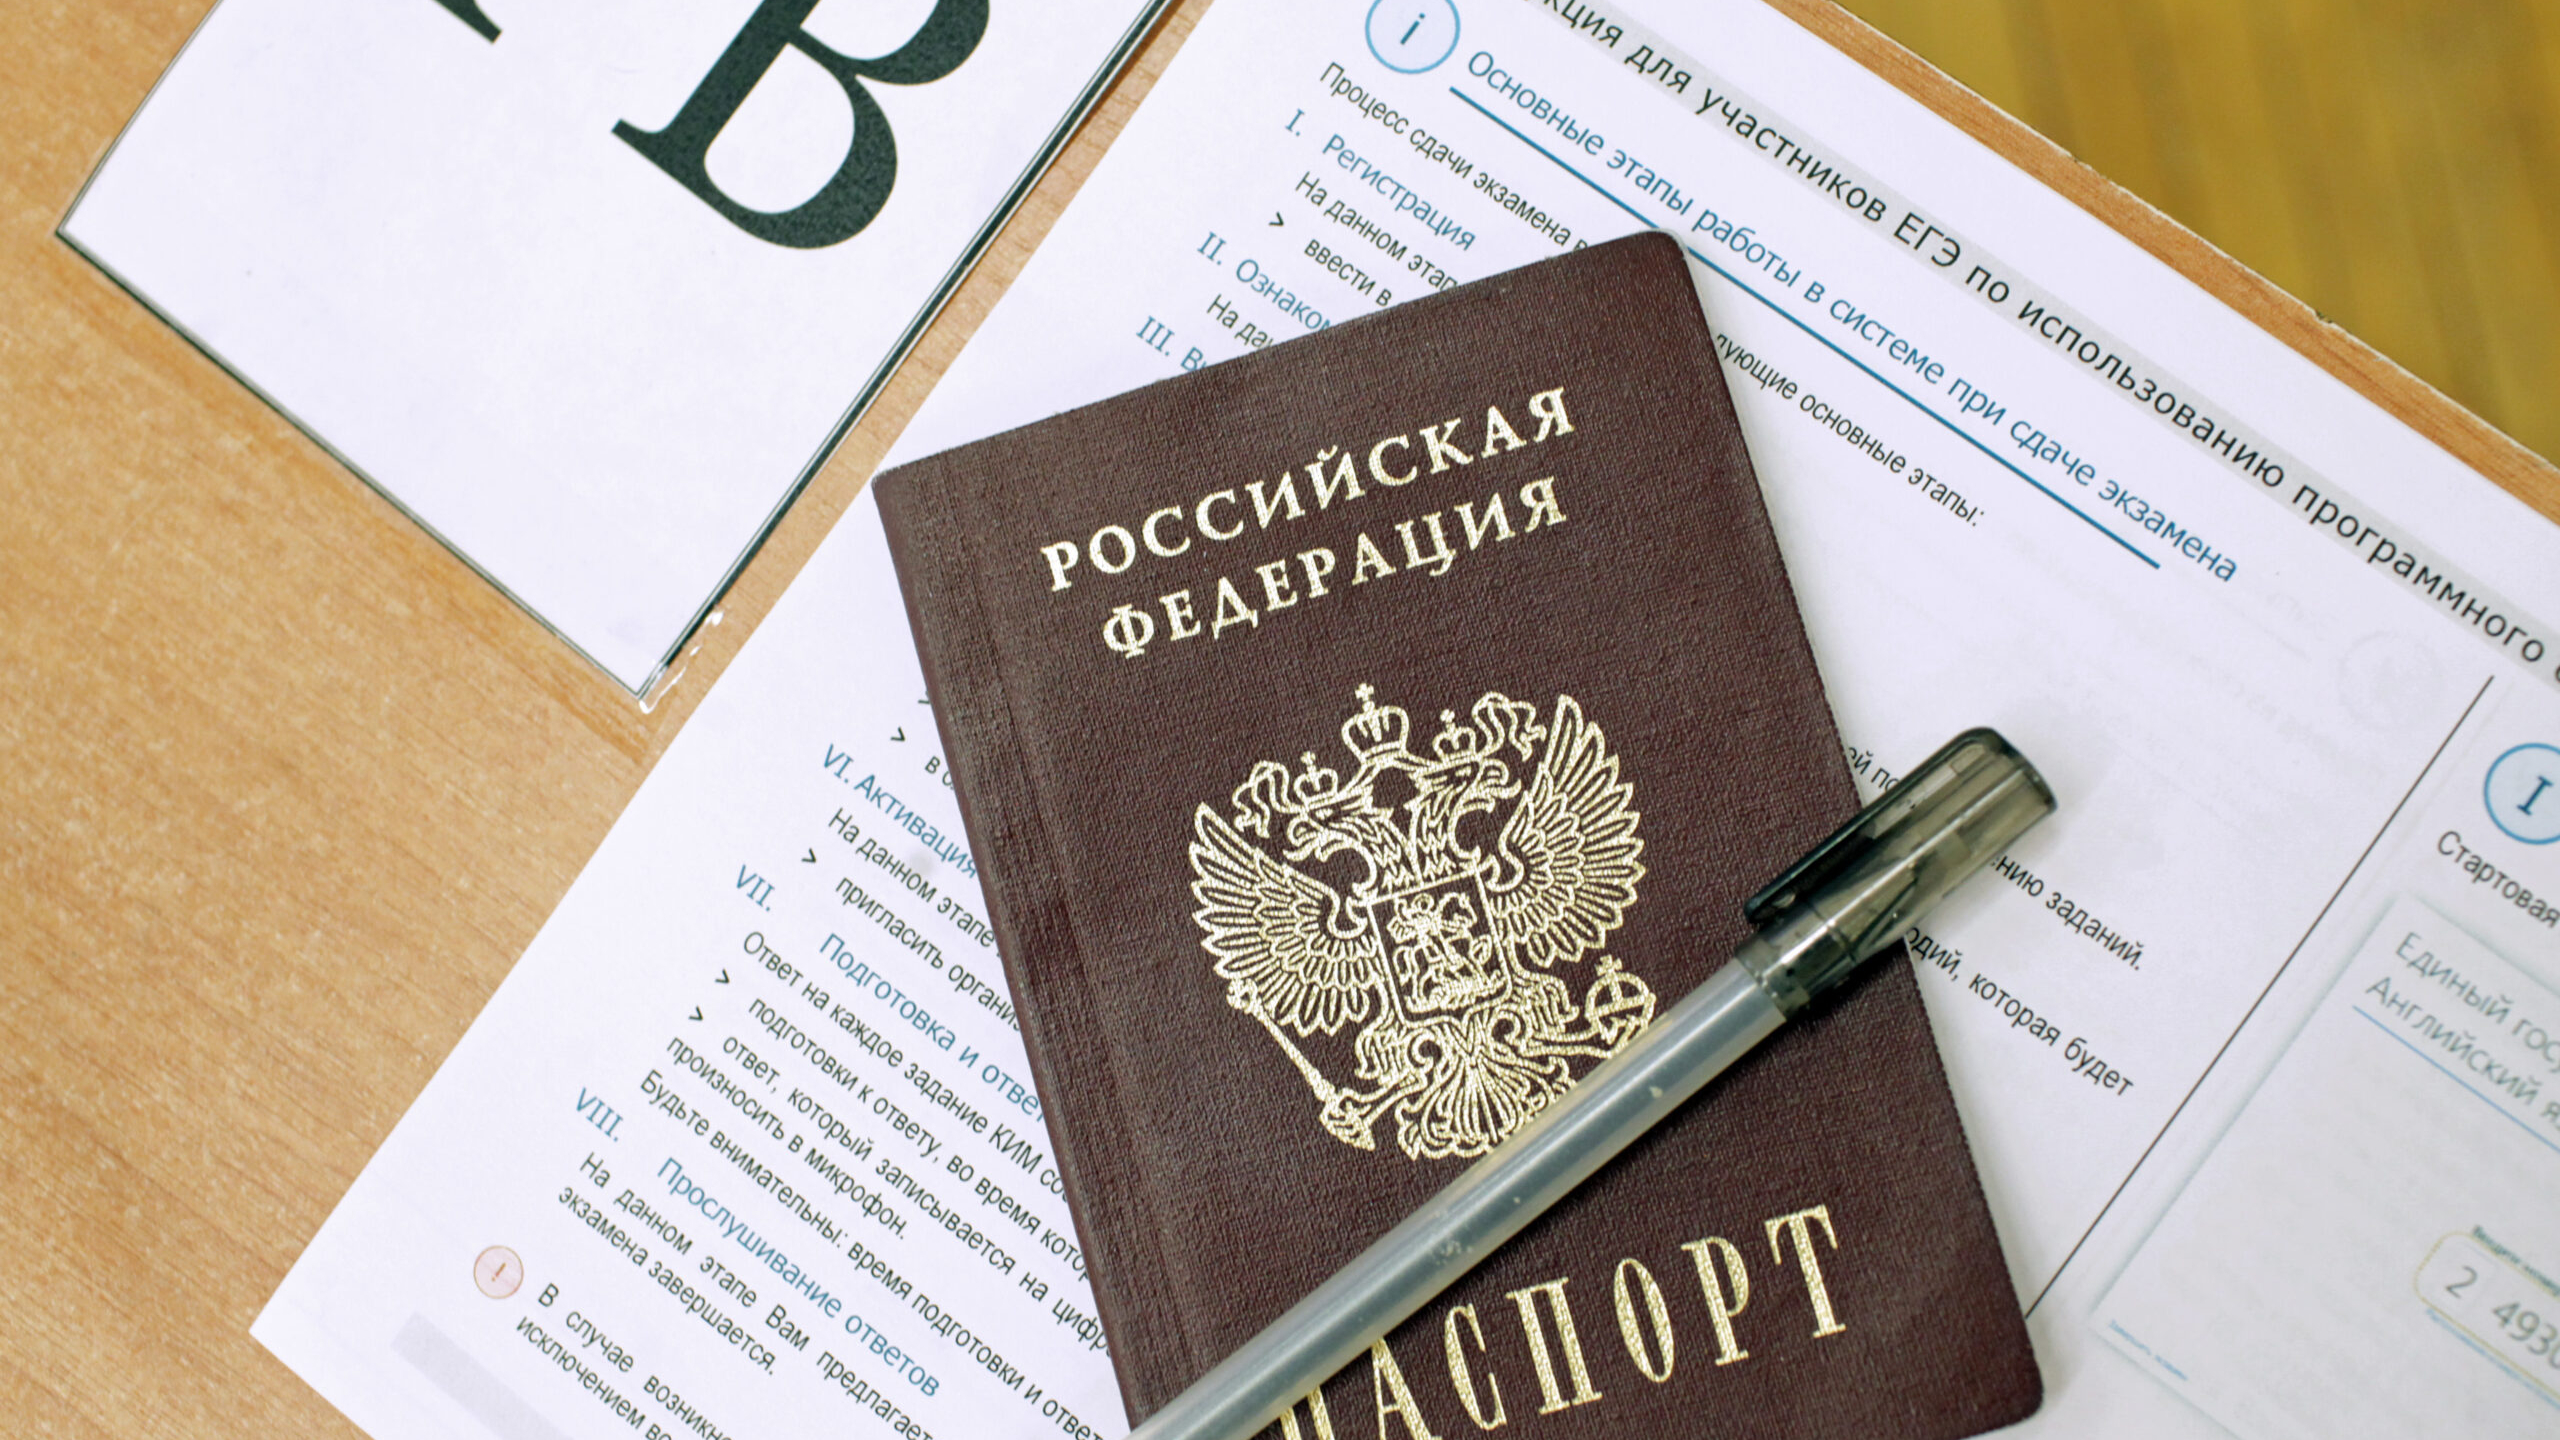 В Петербурге за год резко сократилось количество стобалльников на ЕГЭ по русскому языку